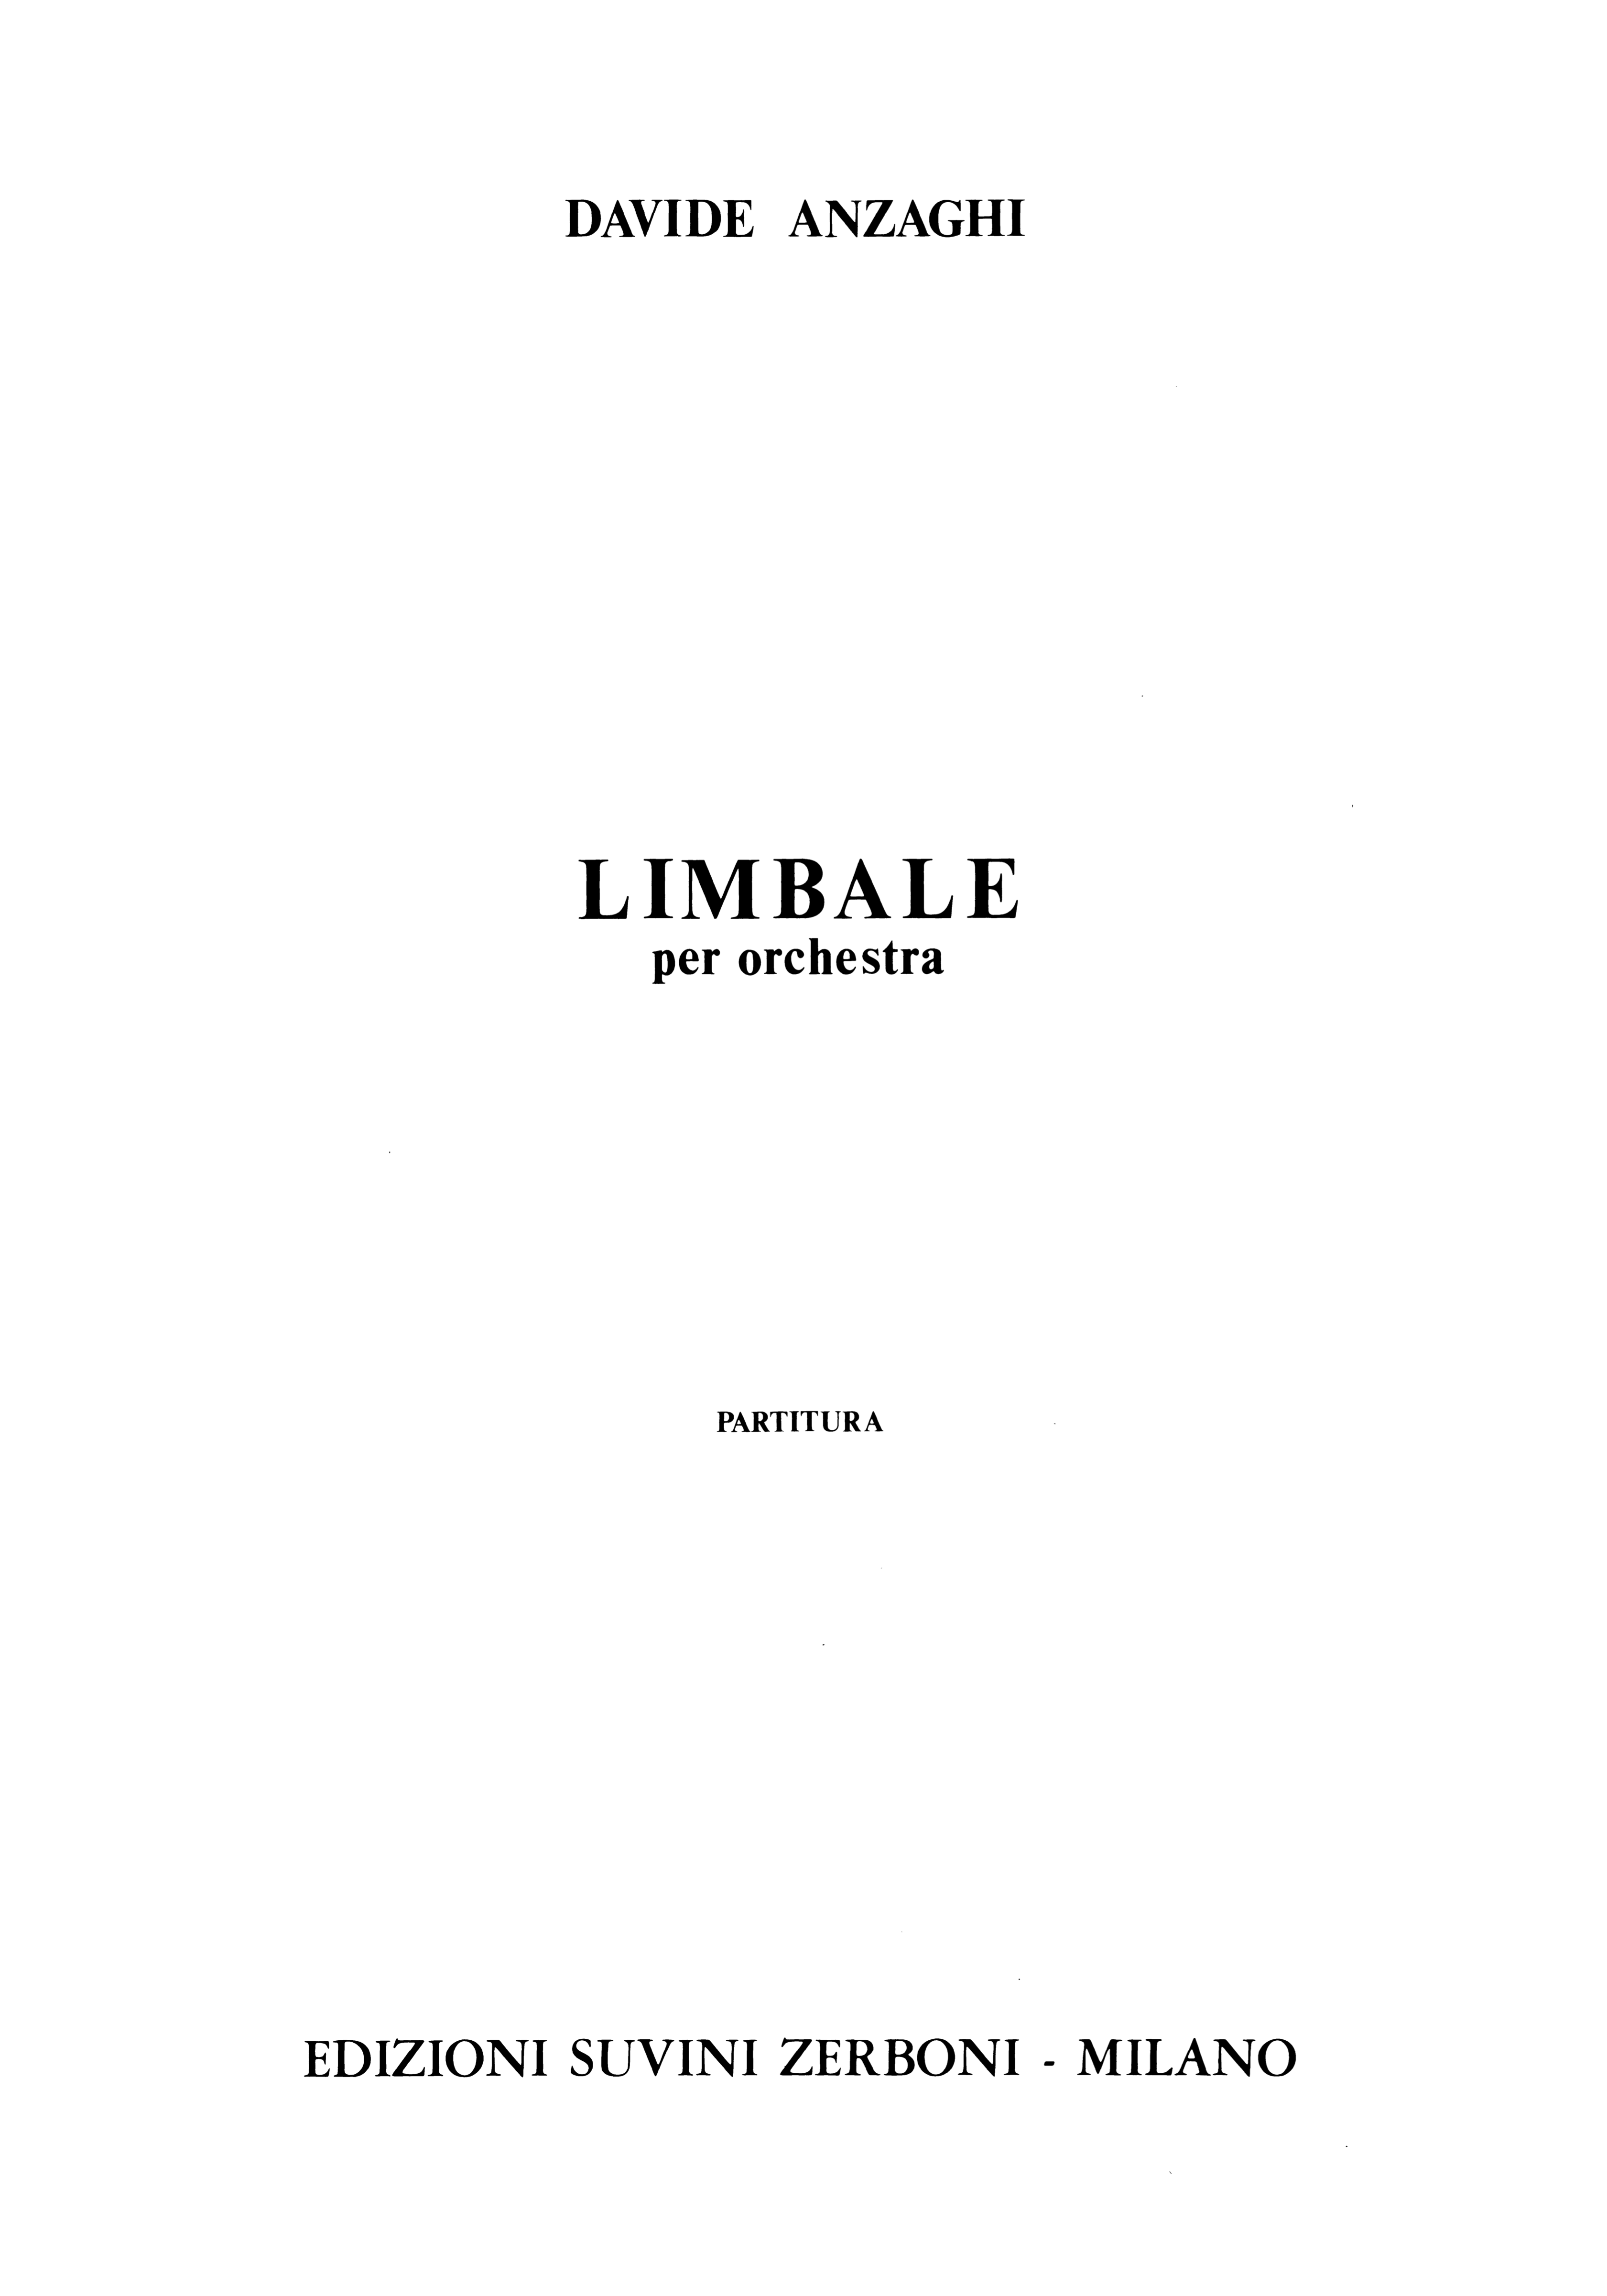 Limbale_Anzaghi 1